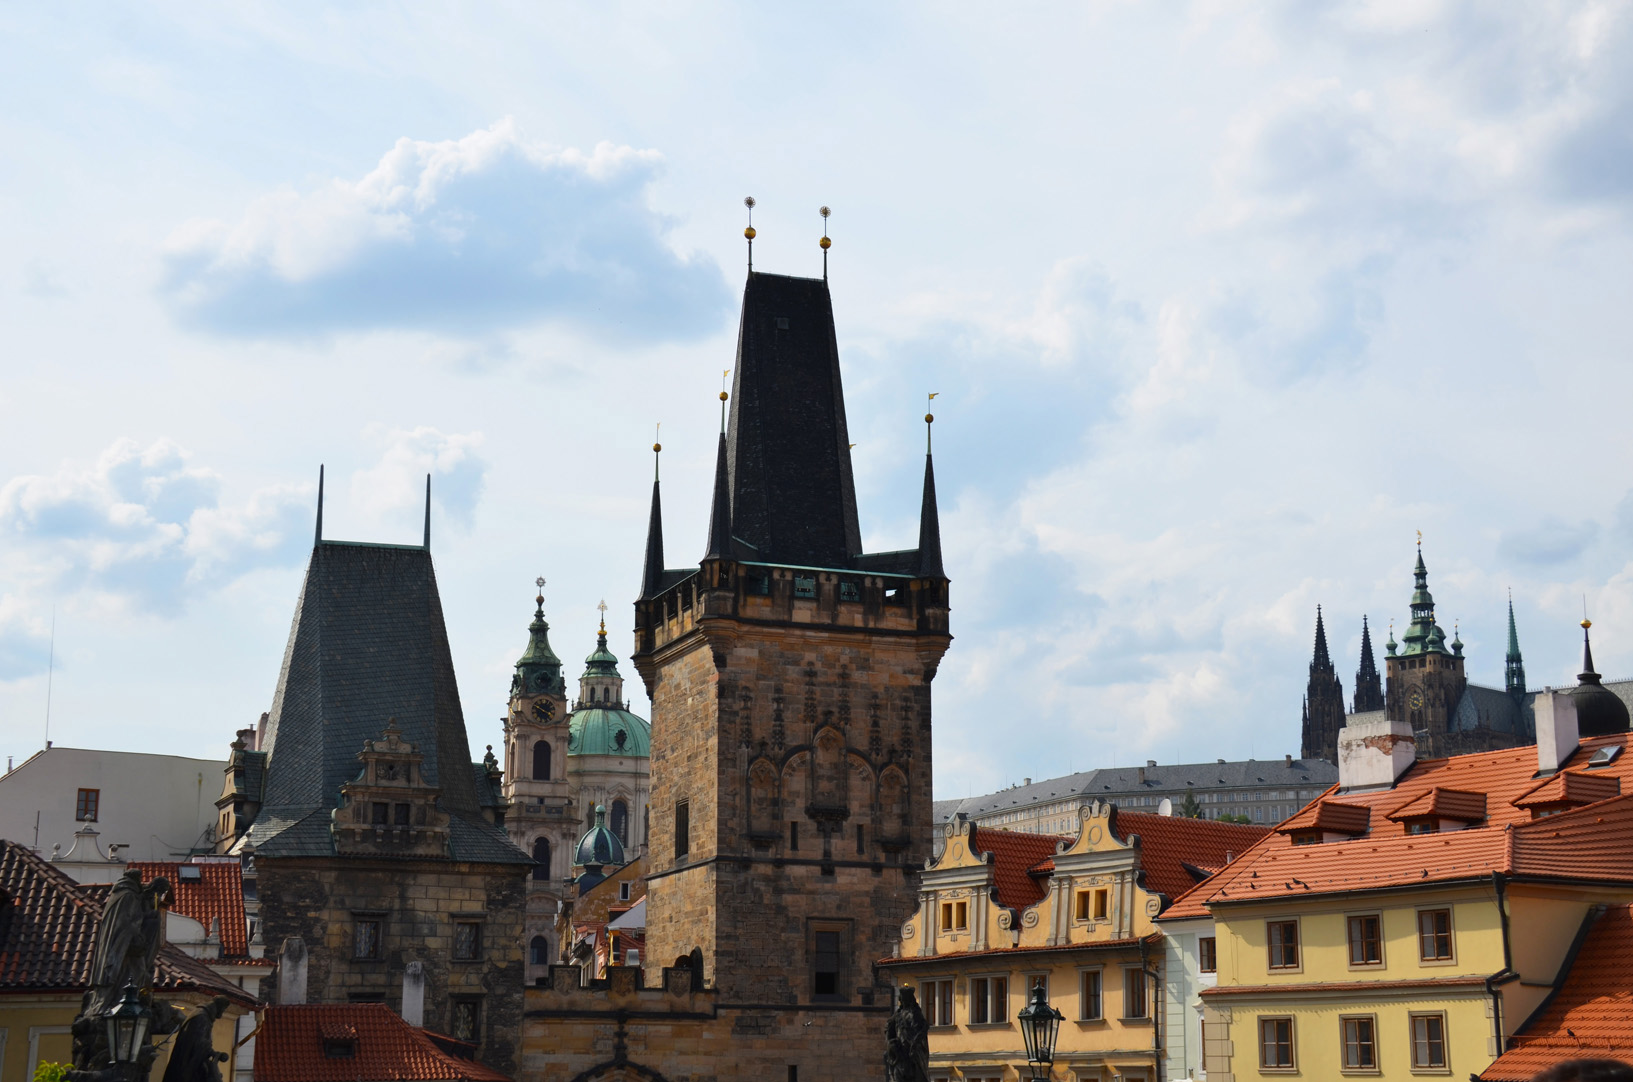 visita panoramica pro el centro de Praga